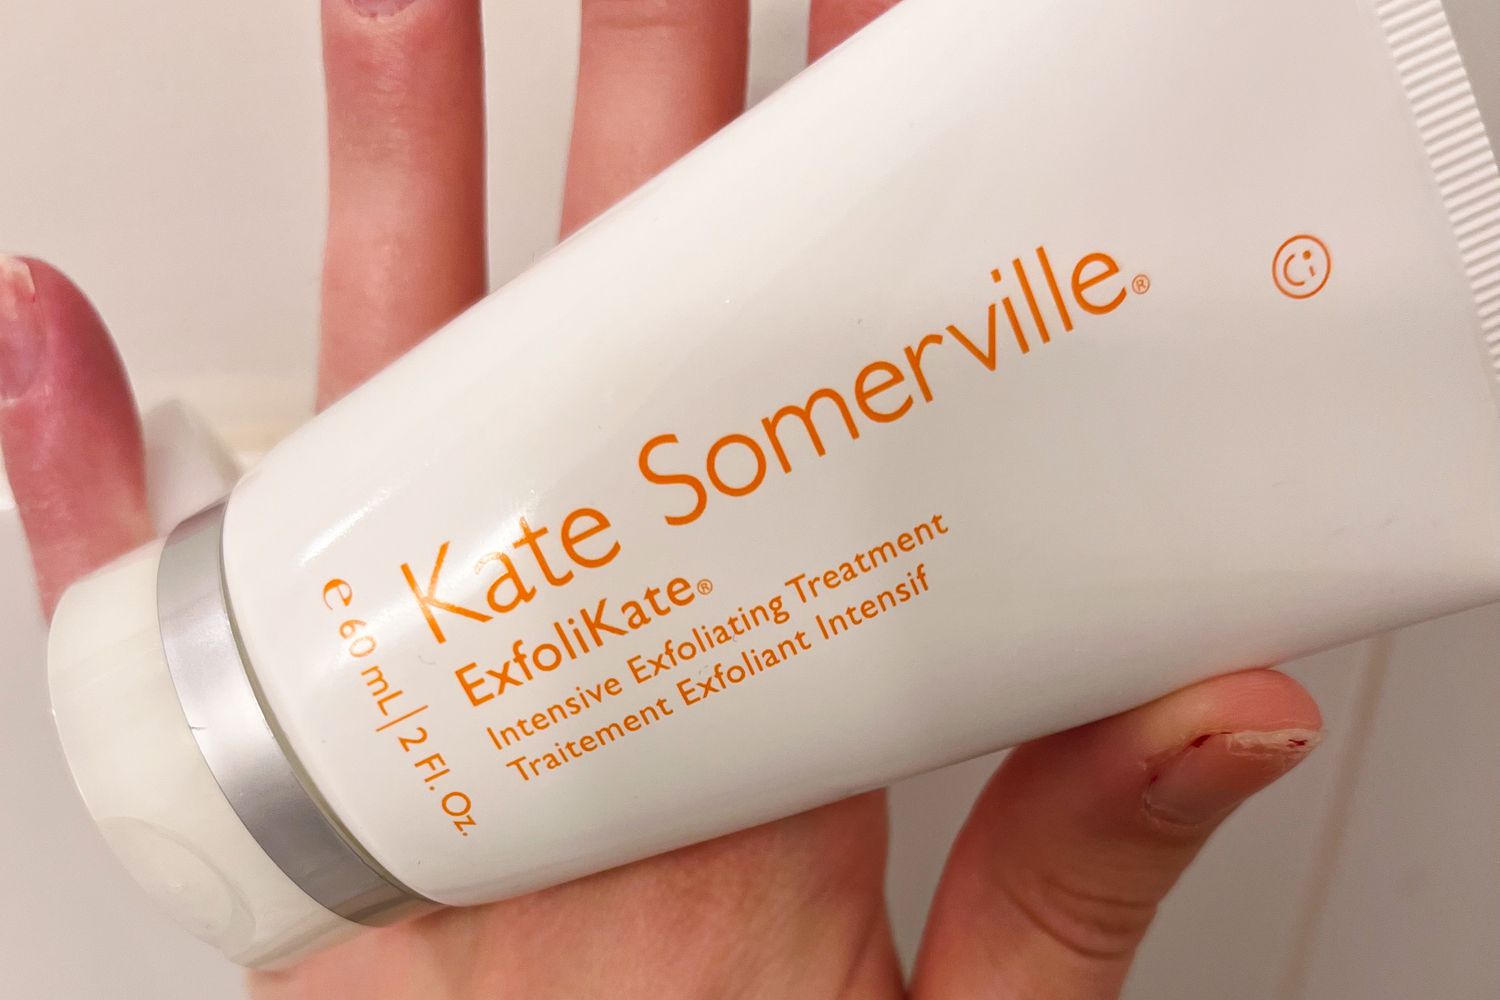 Kate Somerville Esfolikate Intensive poro Tratamento esfoliante